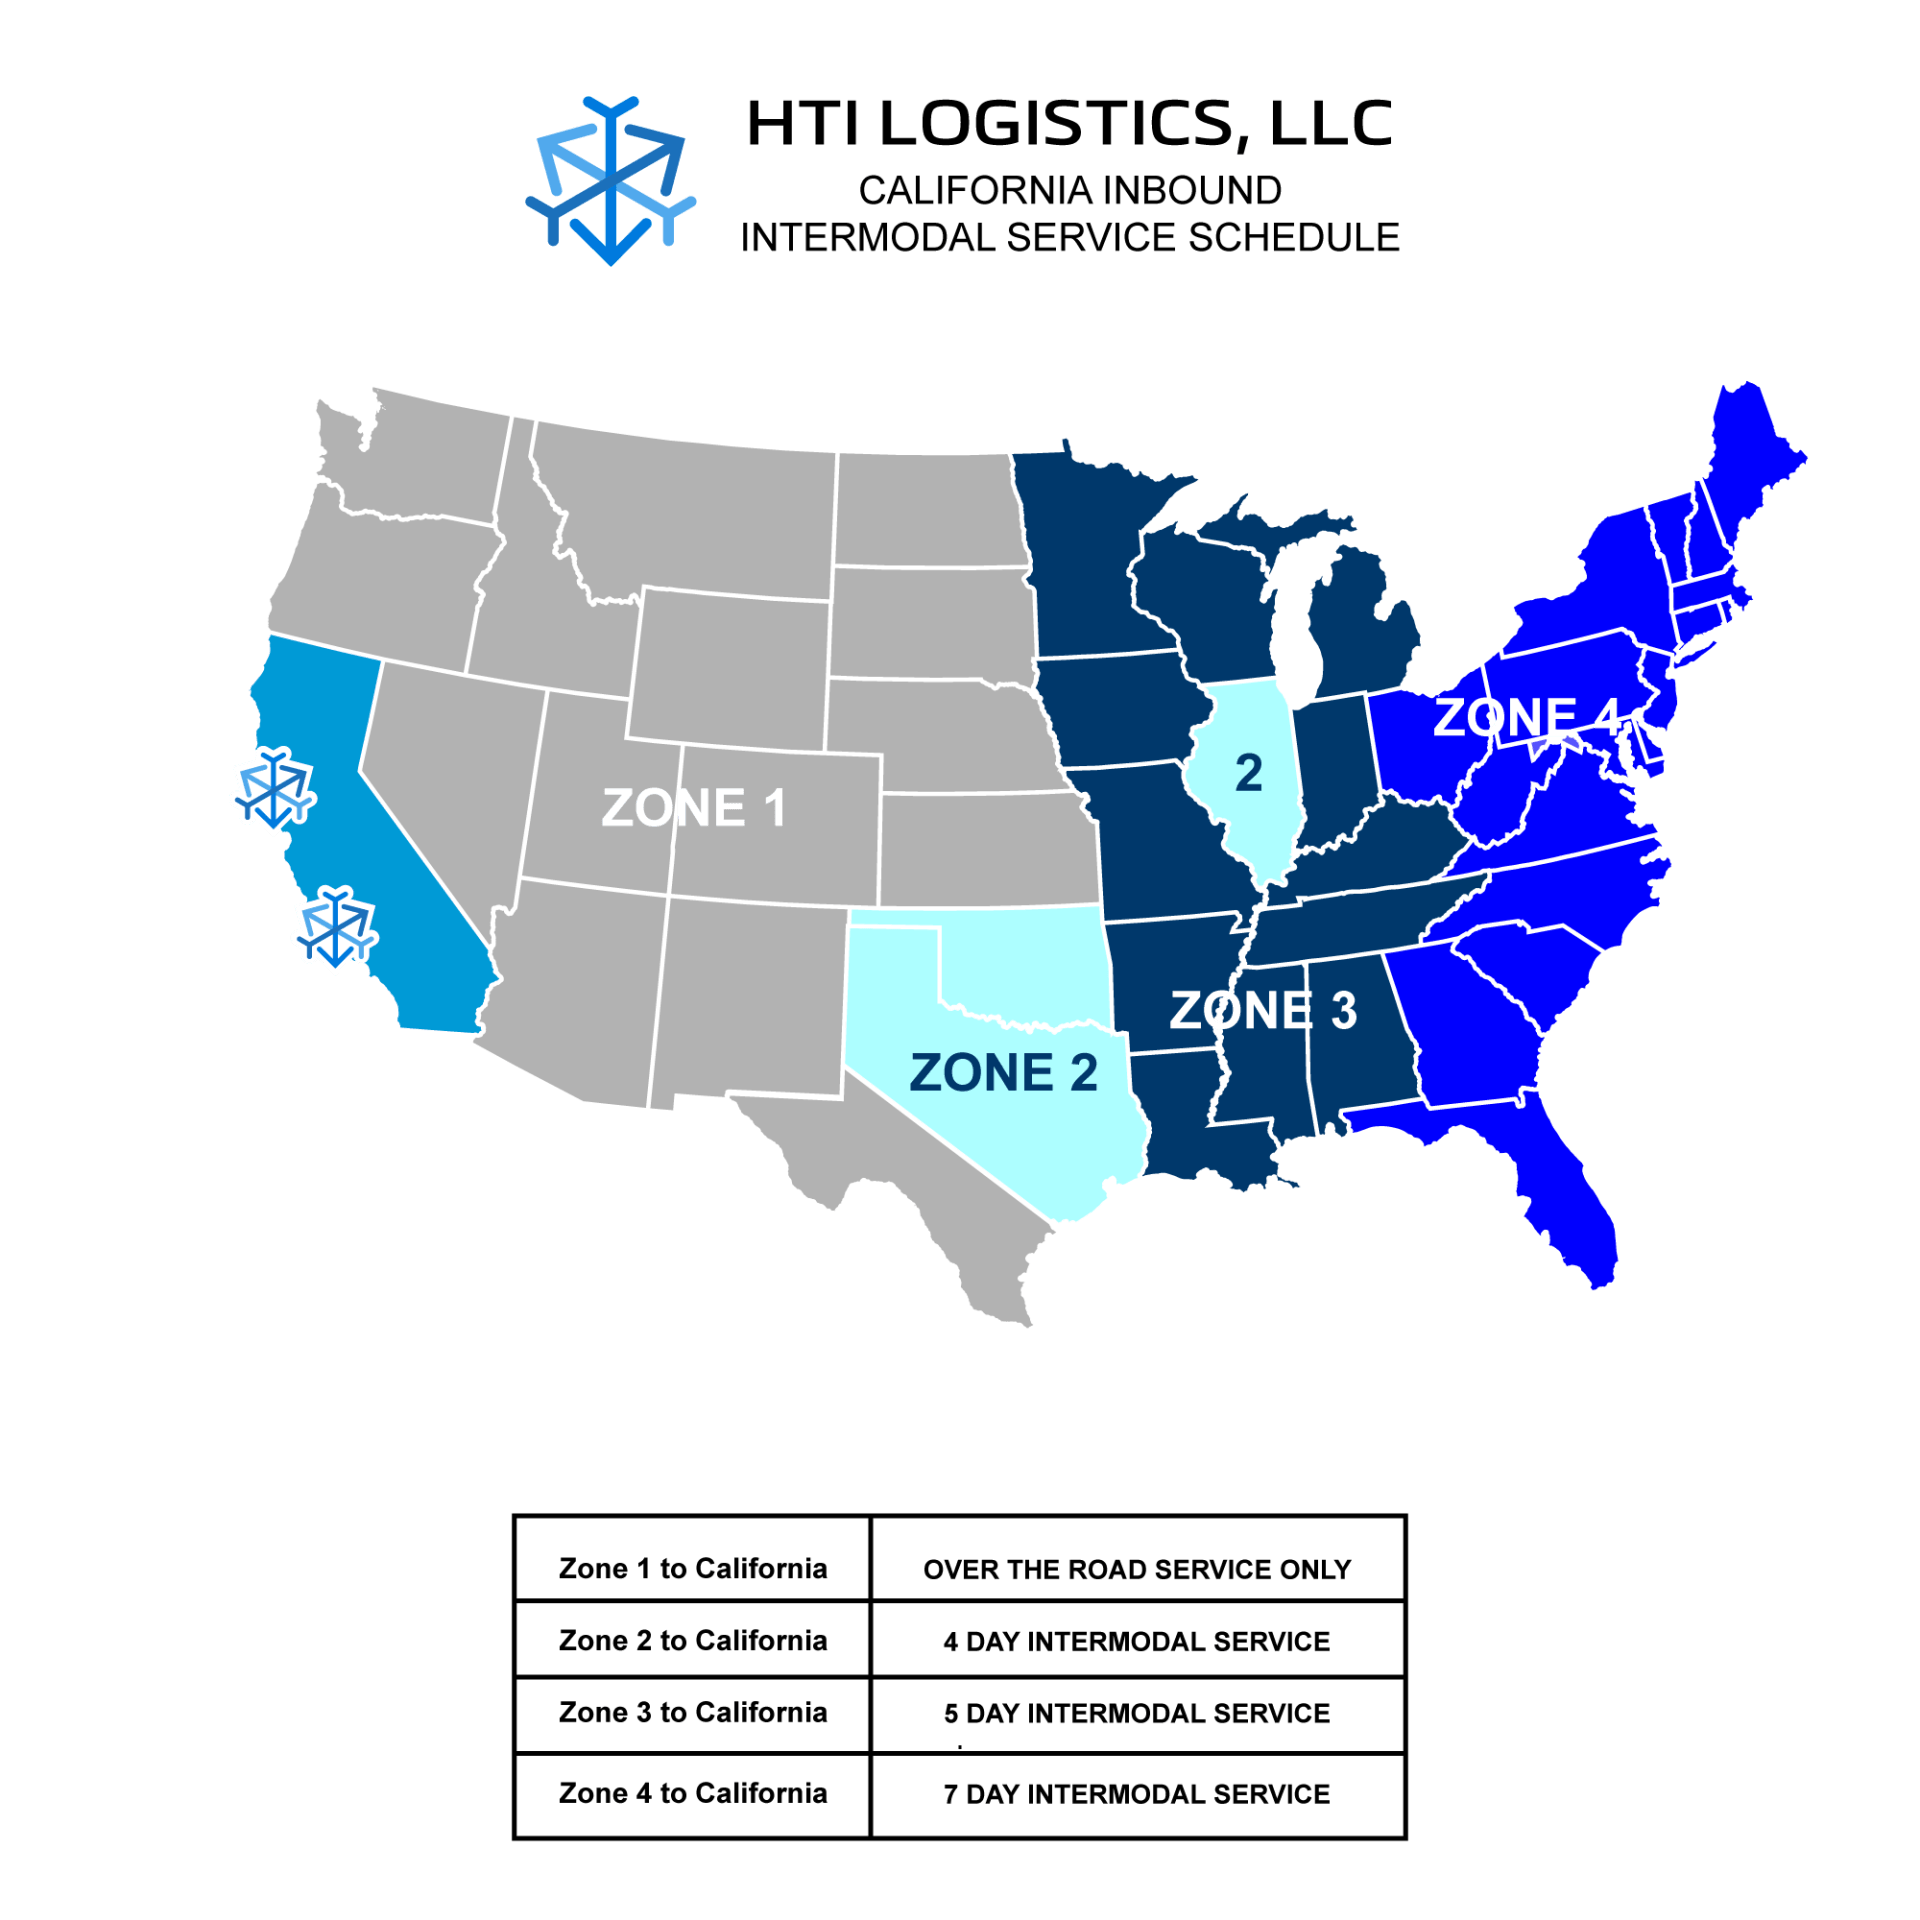 HTI Logistics, LLC Intermodal Service Schedule